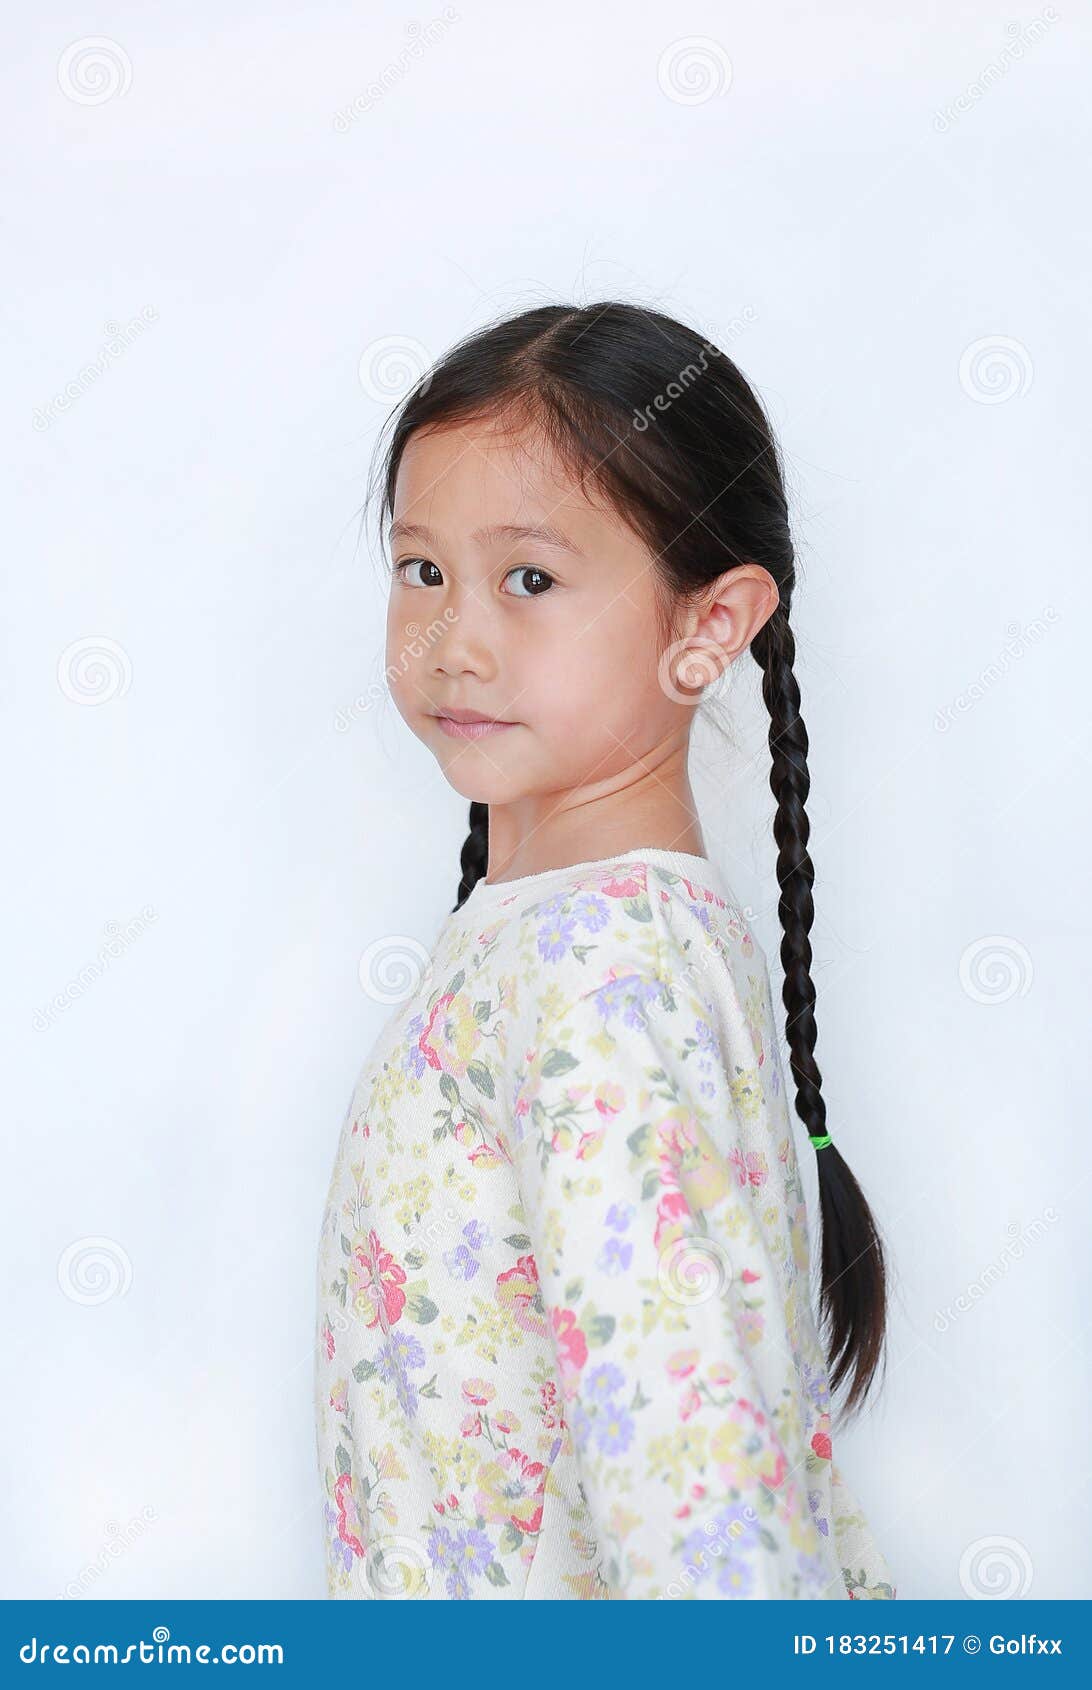 白色背景背后看相机的可爱亚洲小女孩库存图片. 图片包括有和平, 孩子  image